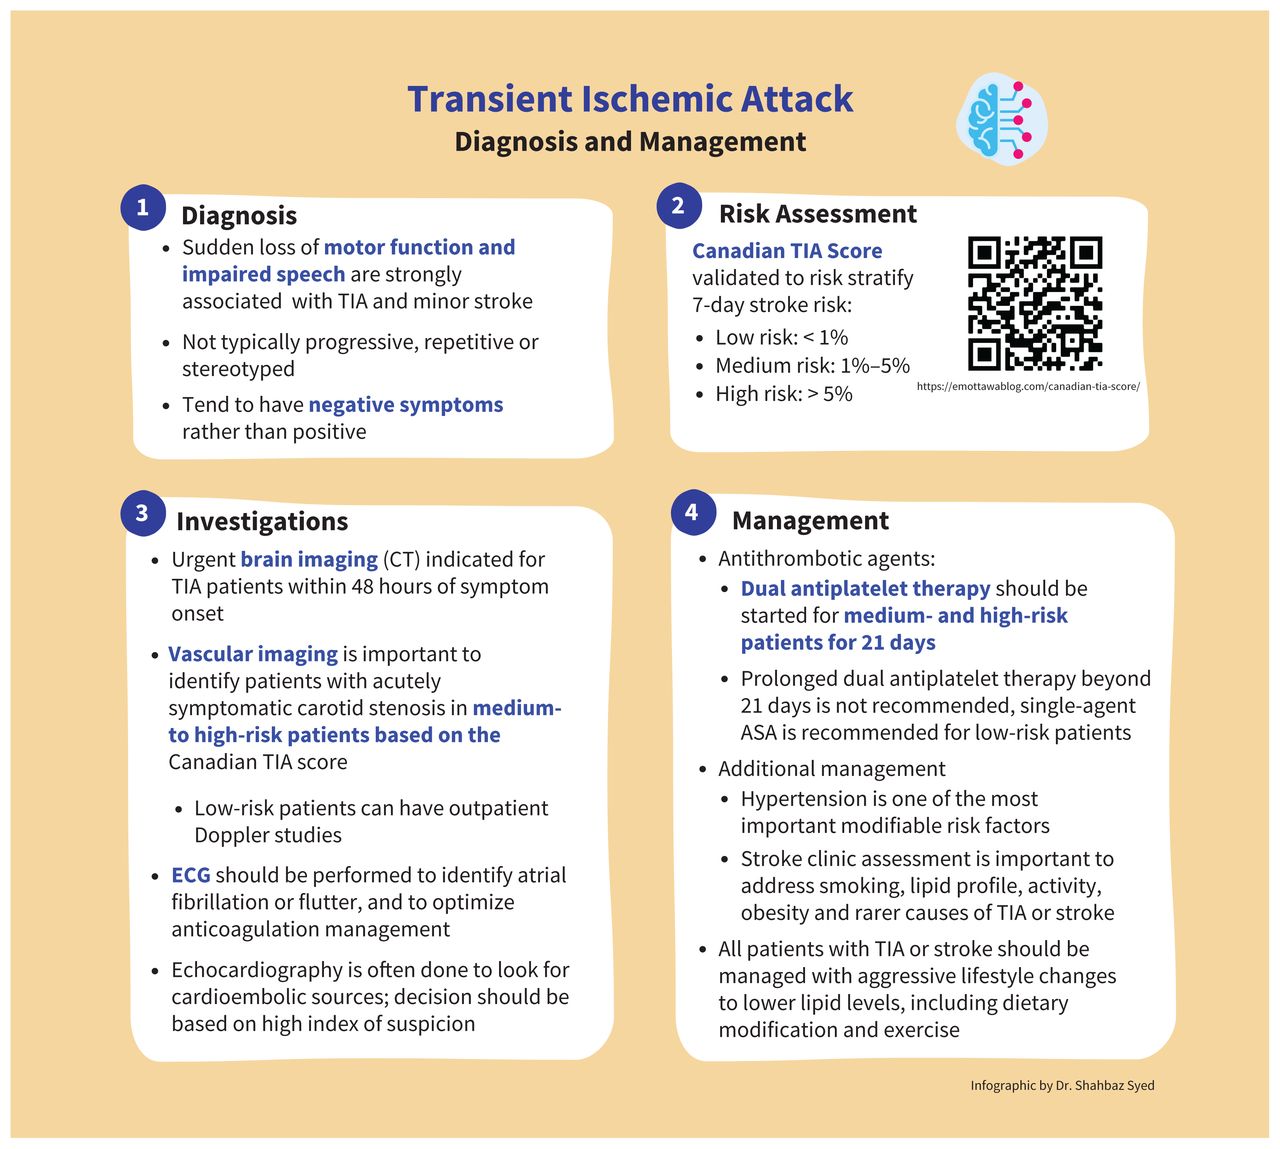 transient ischemic attack case presentation ppt